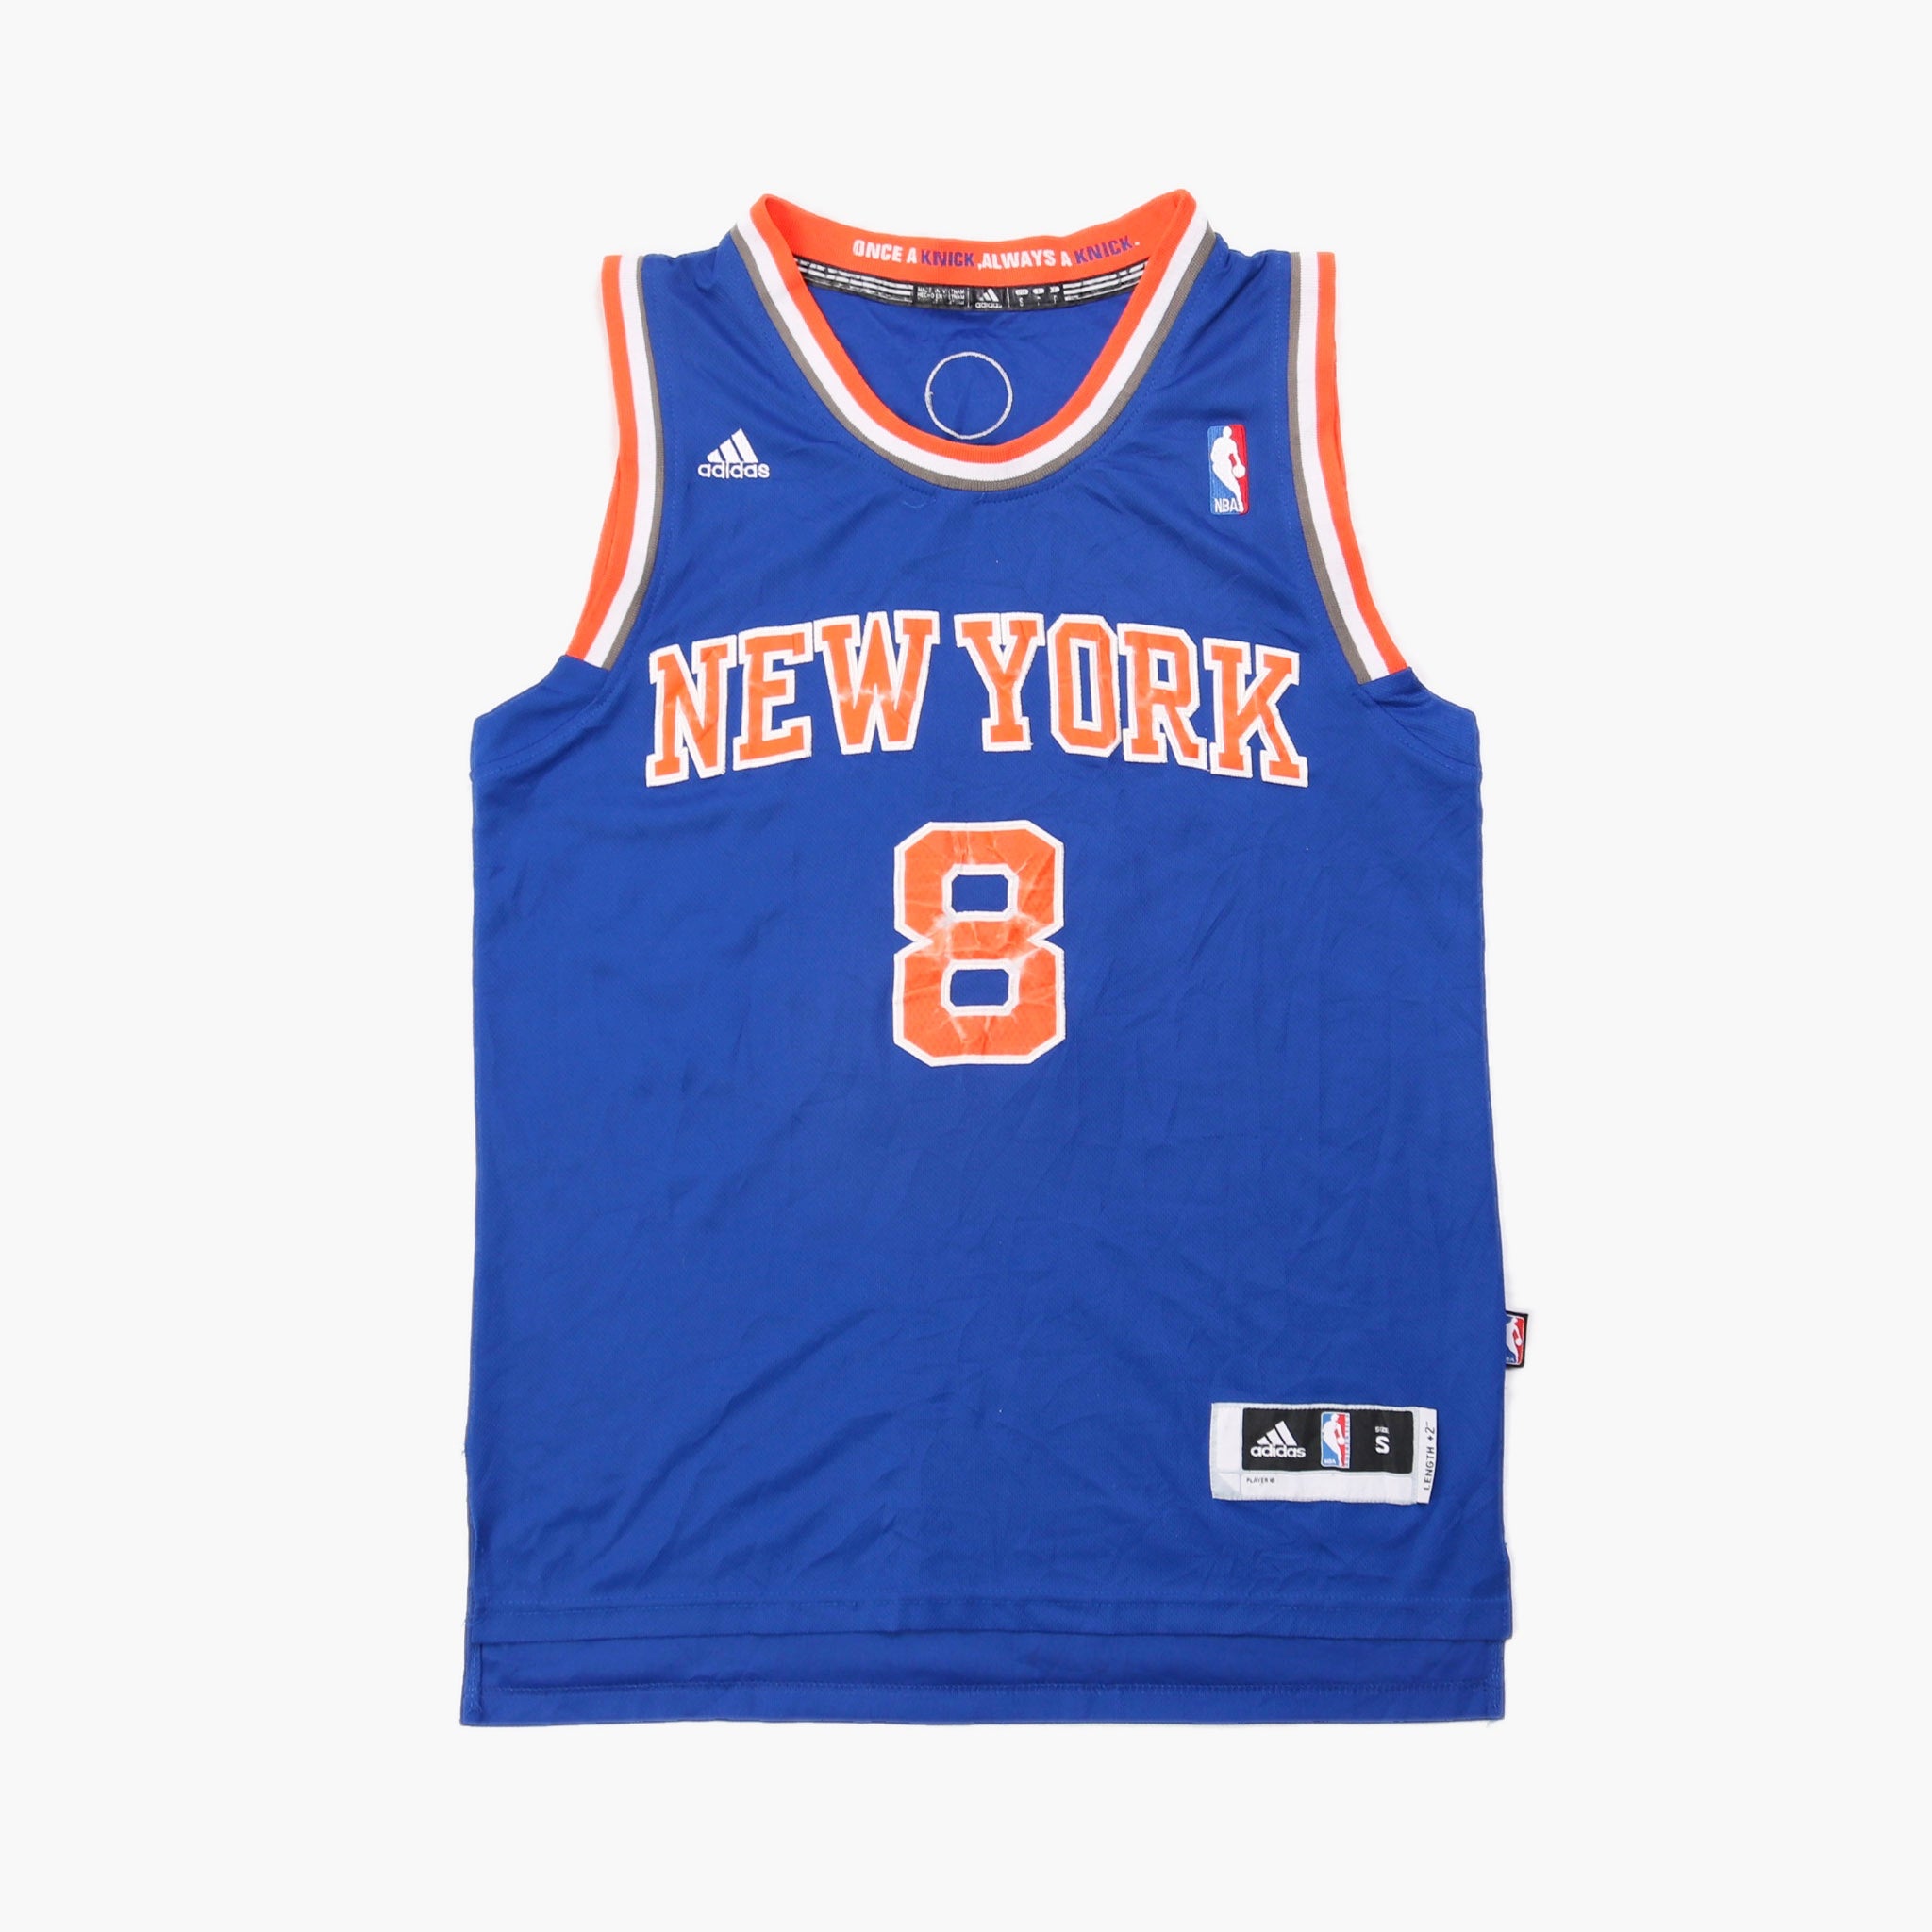 Vintage New York Knicks NBA Jersey 'Smith